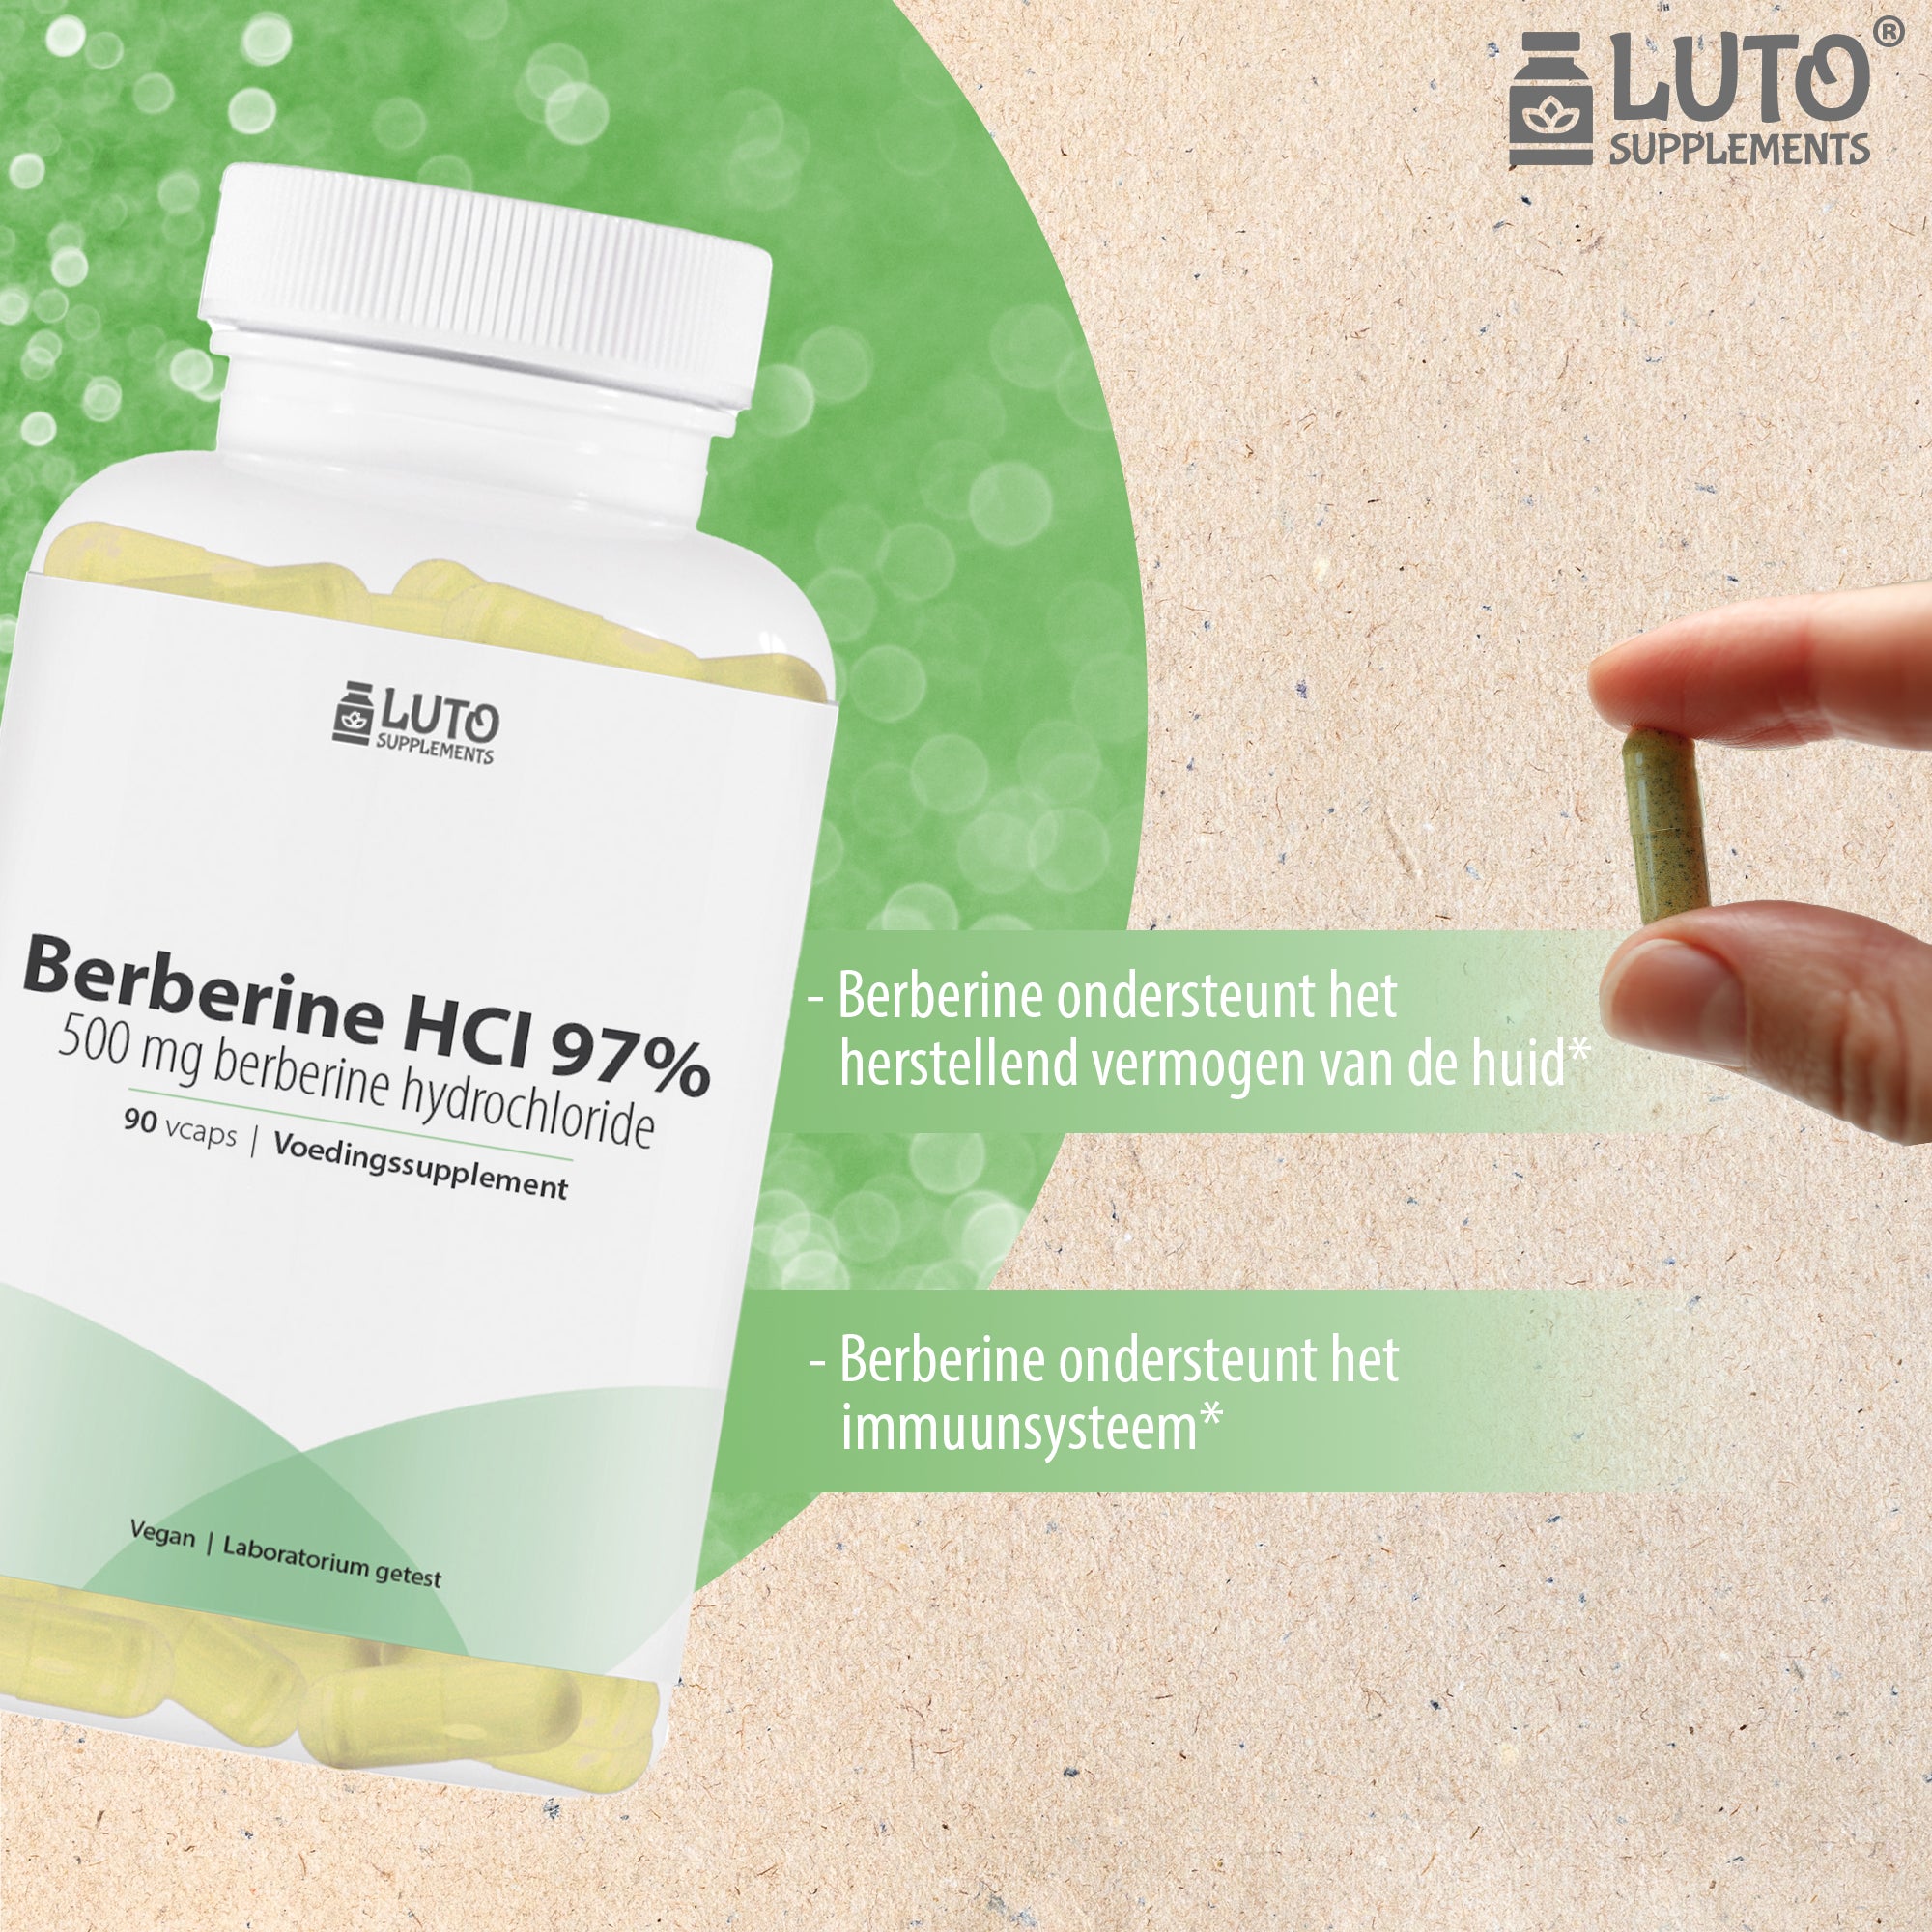 Luto Supplements Berberine HCL 97% | 515 mg Berberiswortelextract | 90 capsules | vegan